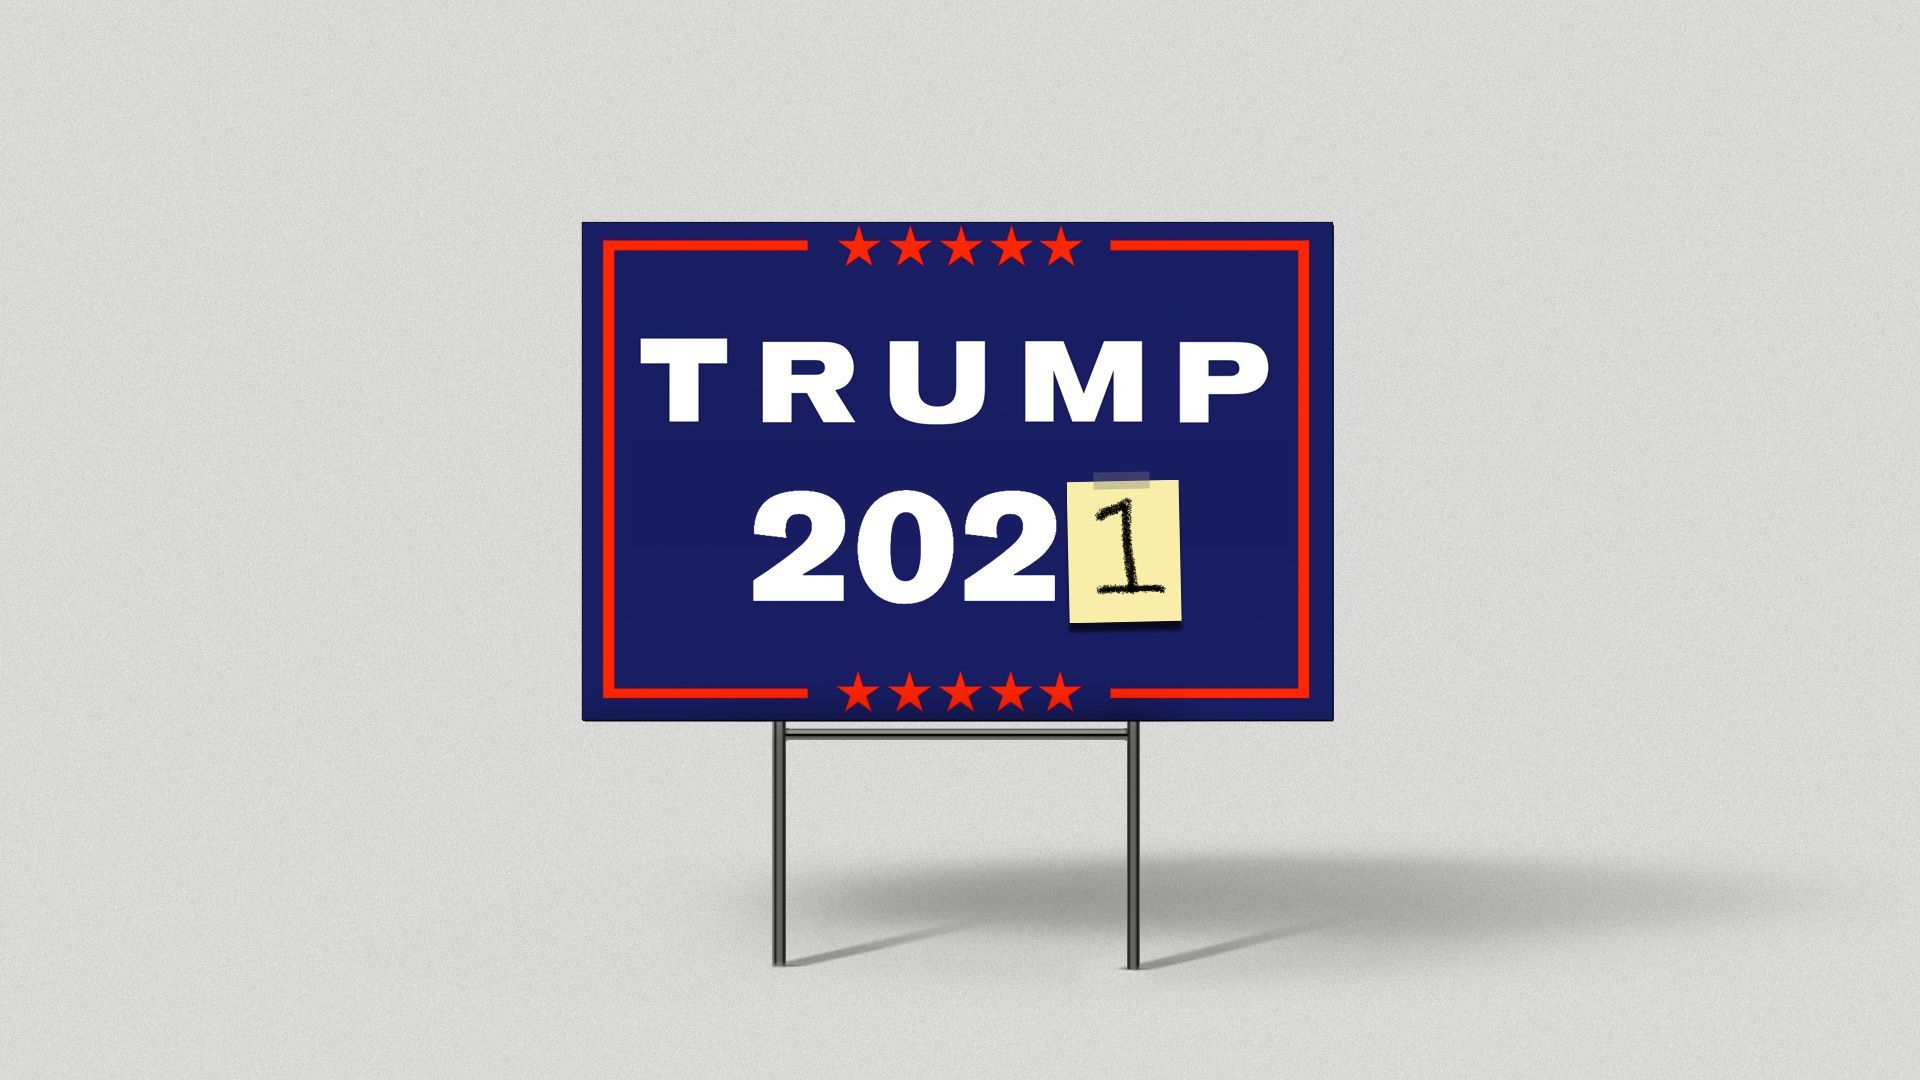 Trump 2021 sign